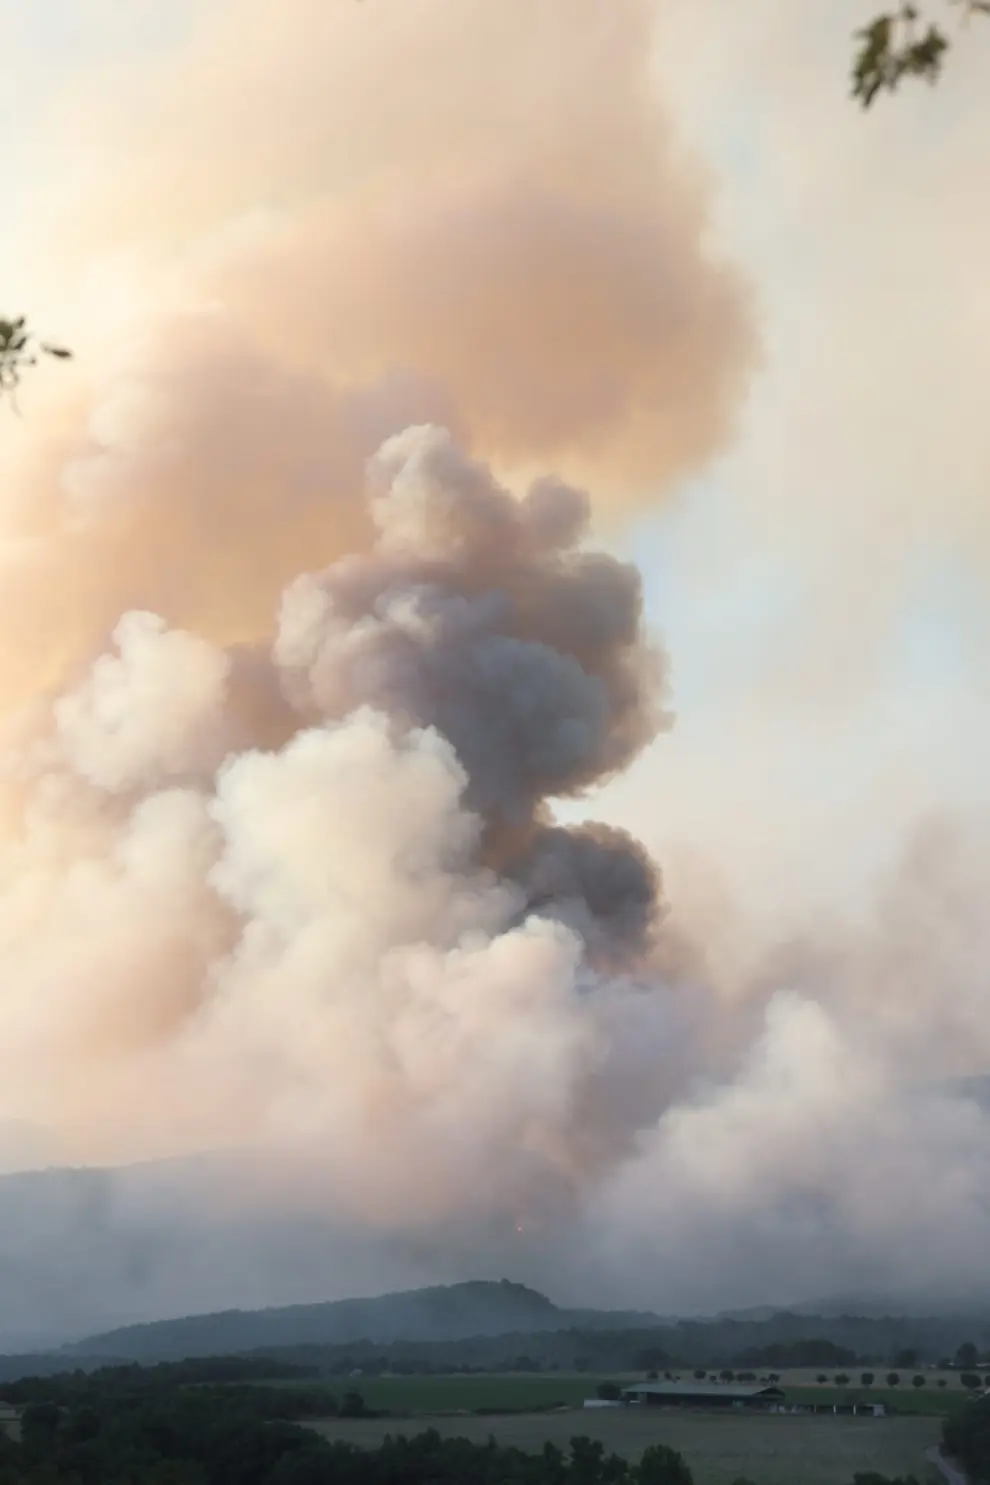 Fotos del incendio forestal en El Pueyo de Araguás